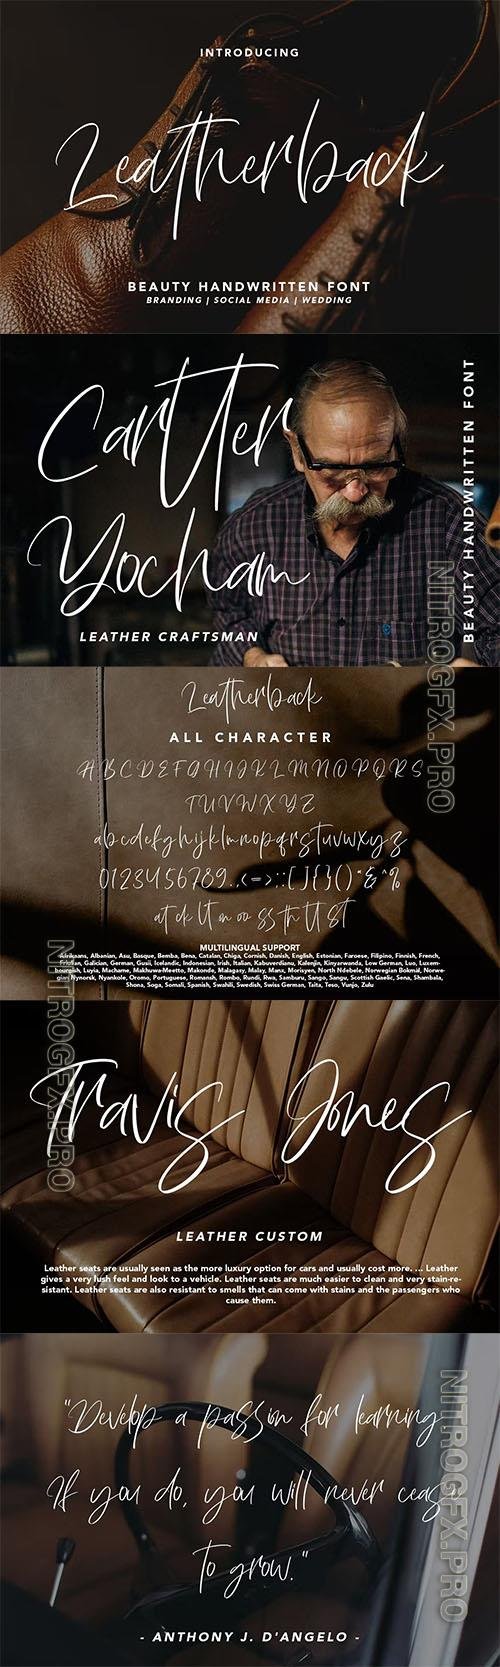 Leatherback - Beauty Handwritten Font